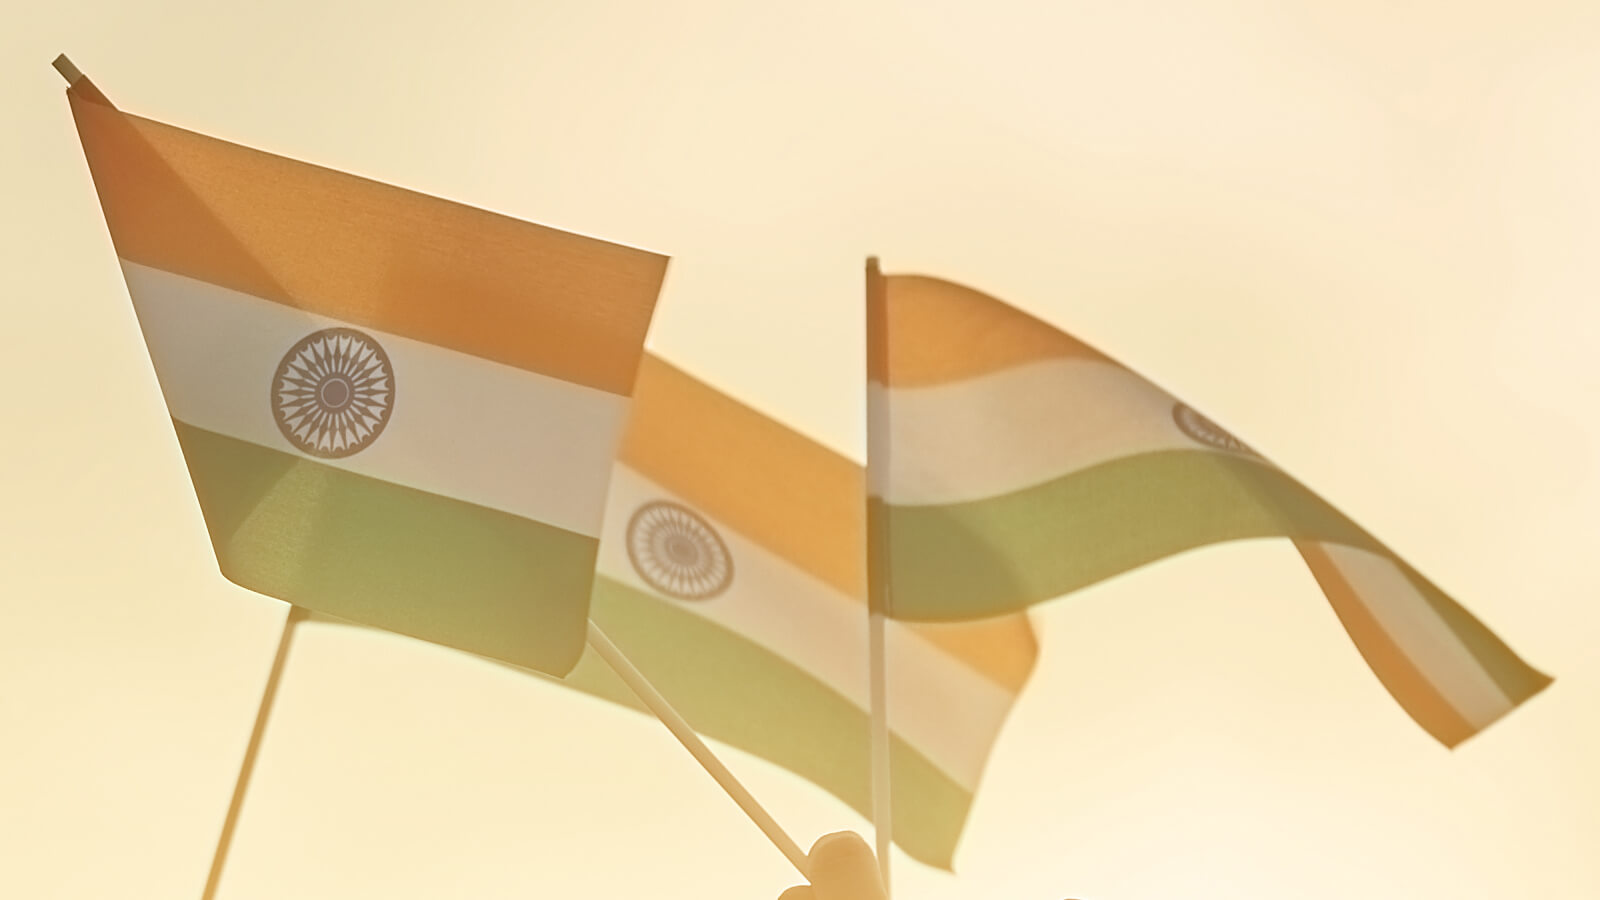 [Für Inder] Beantwortete 11 Fragen zu Indiens Kryptowährungsverbot